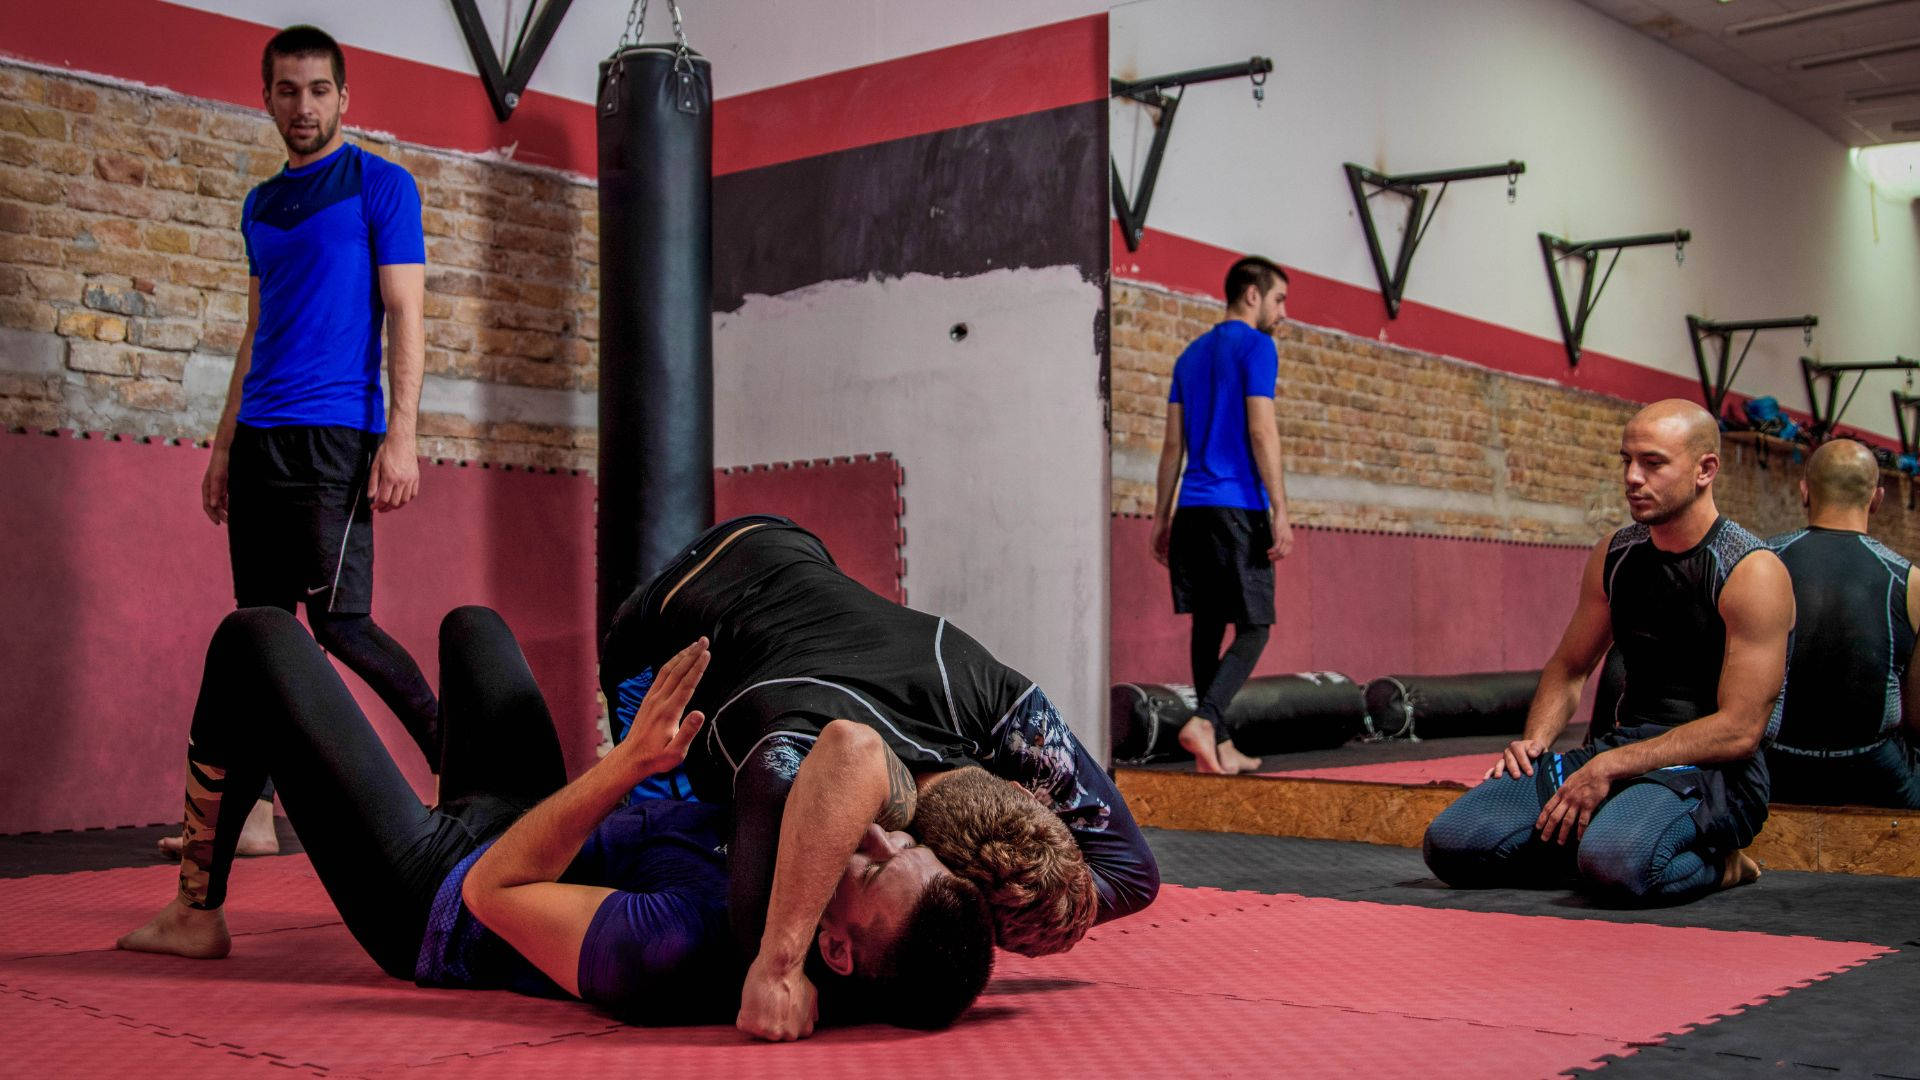 Brazilian Jiu-jitsu Training In Action Background